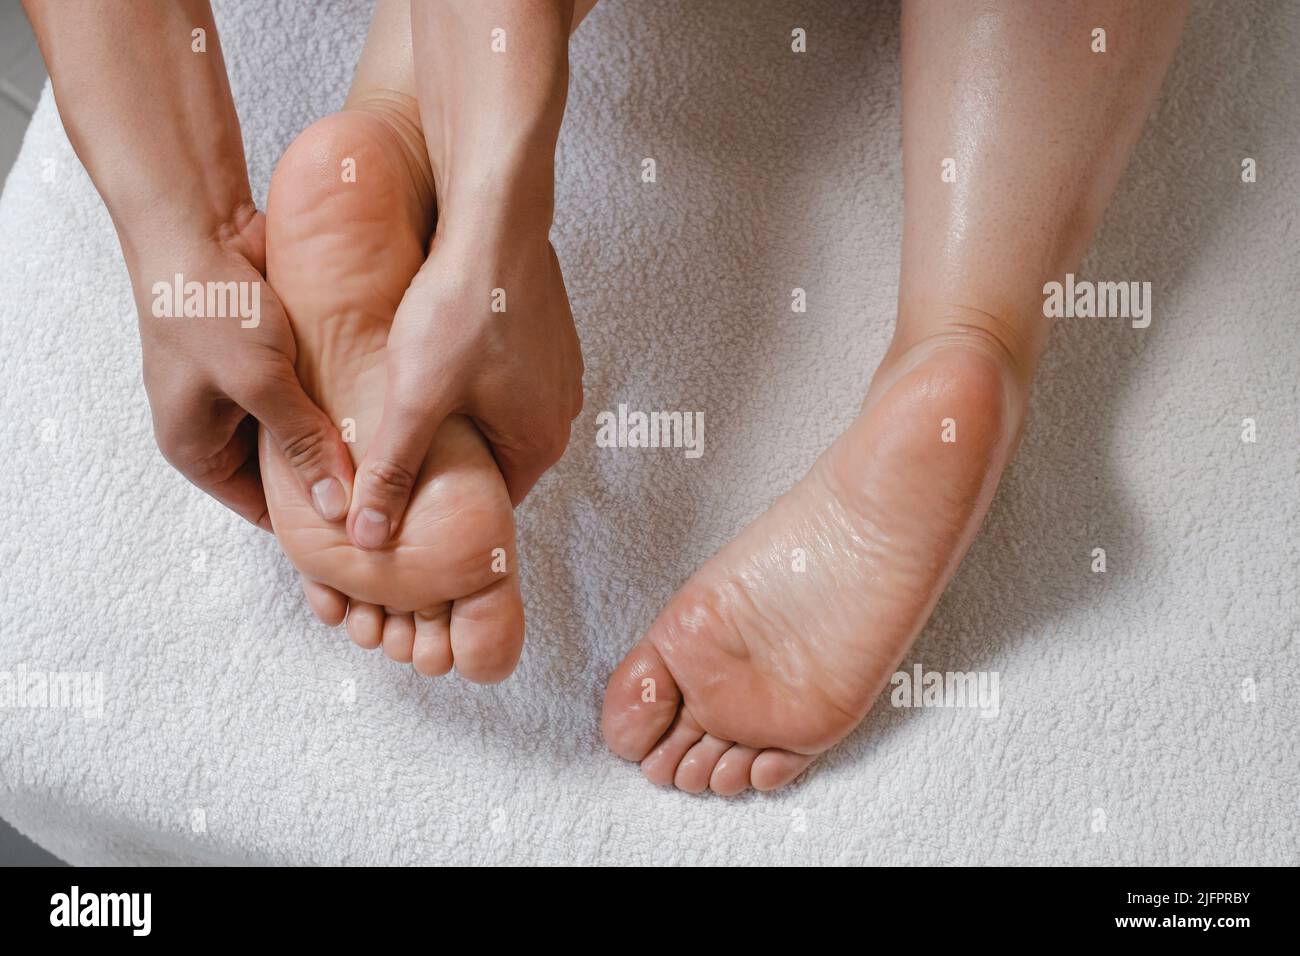 Fußmassage-Behandlung durch professionellen Masseur im Spa-Resort. Wellness, Stressabbau und Verjüngungskonzept. Draufsicht o weißes Handtuch Stockfoto